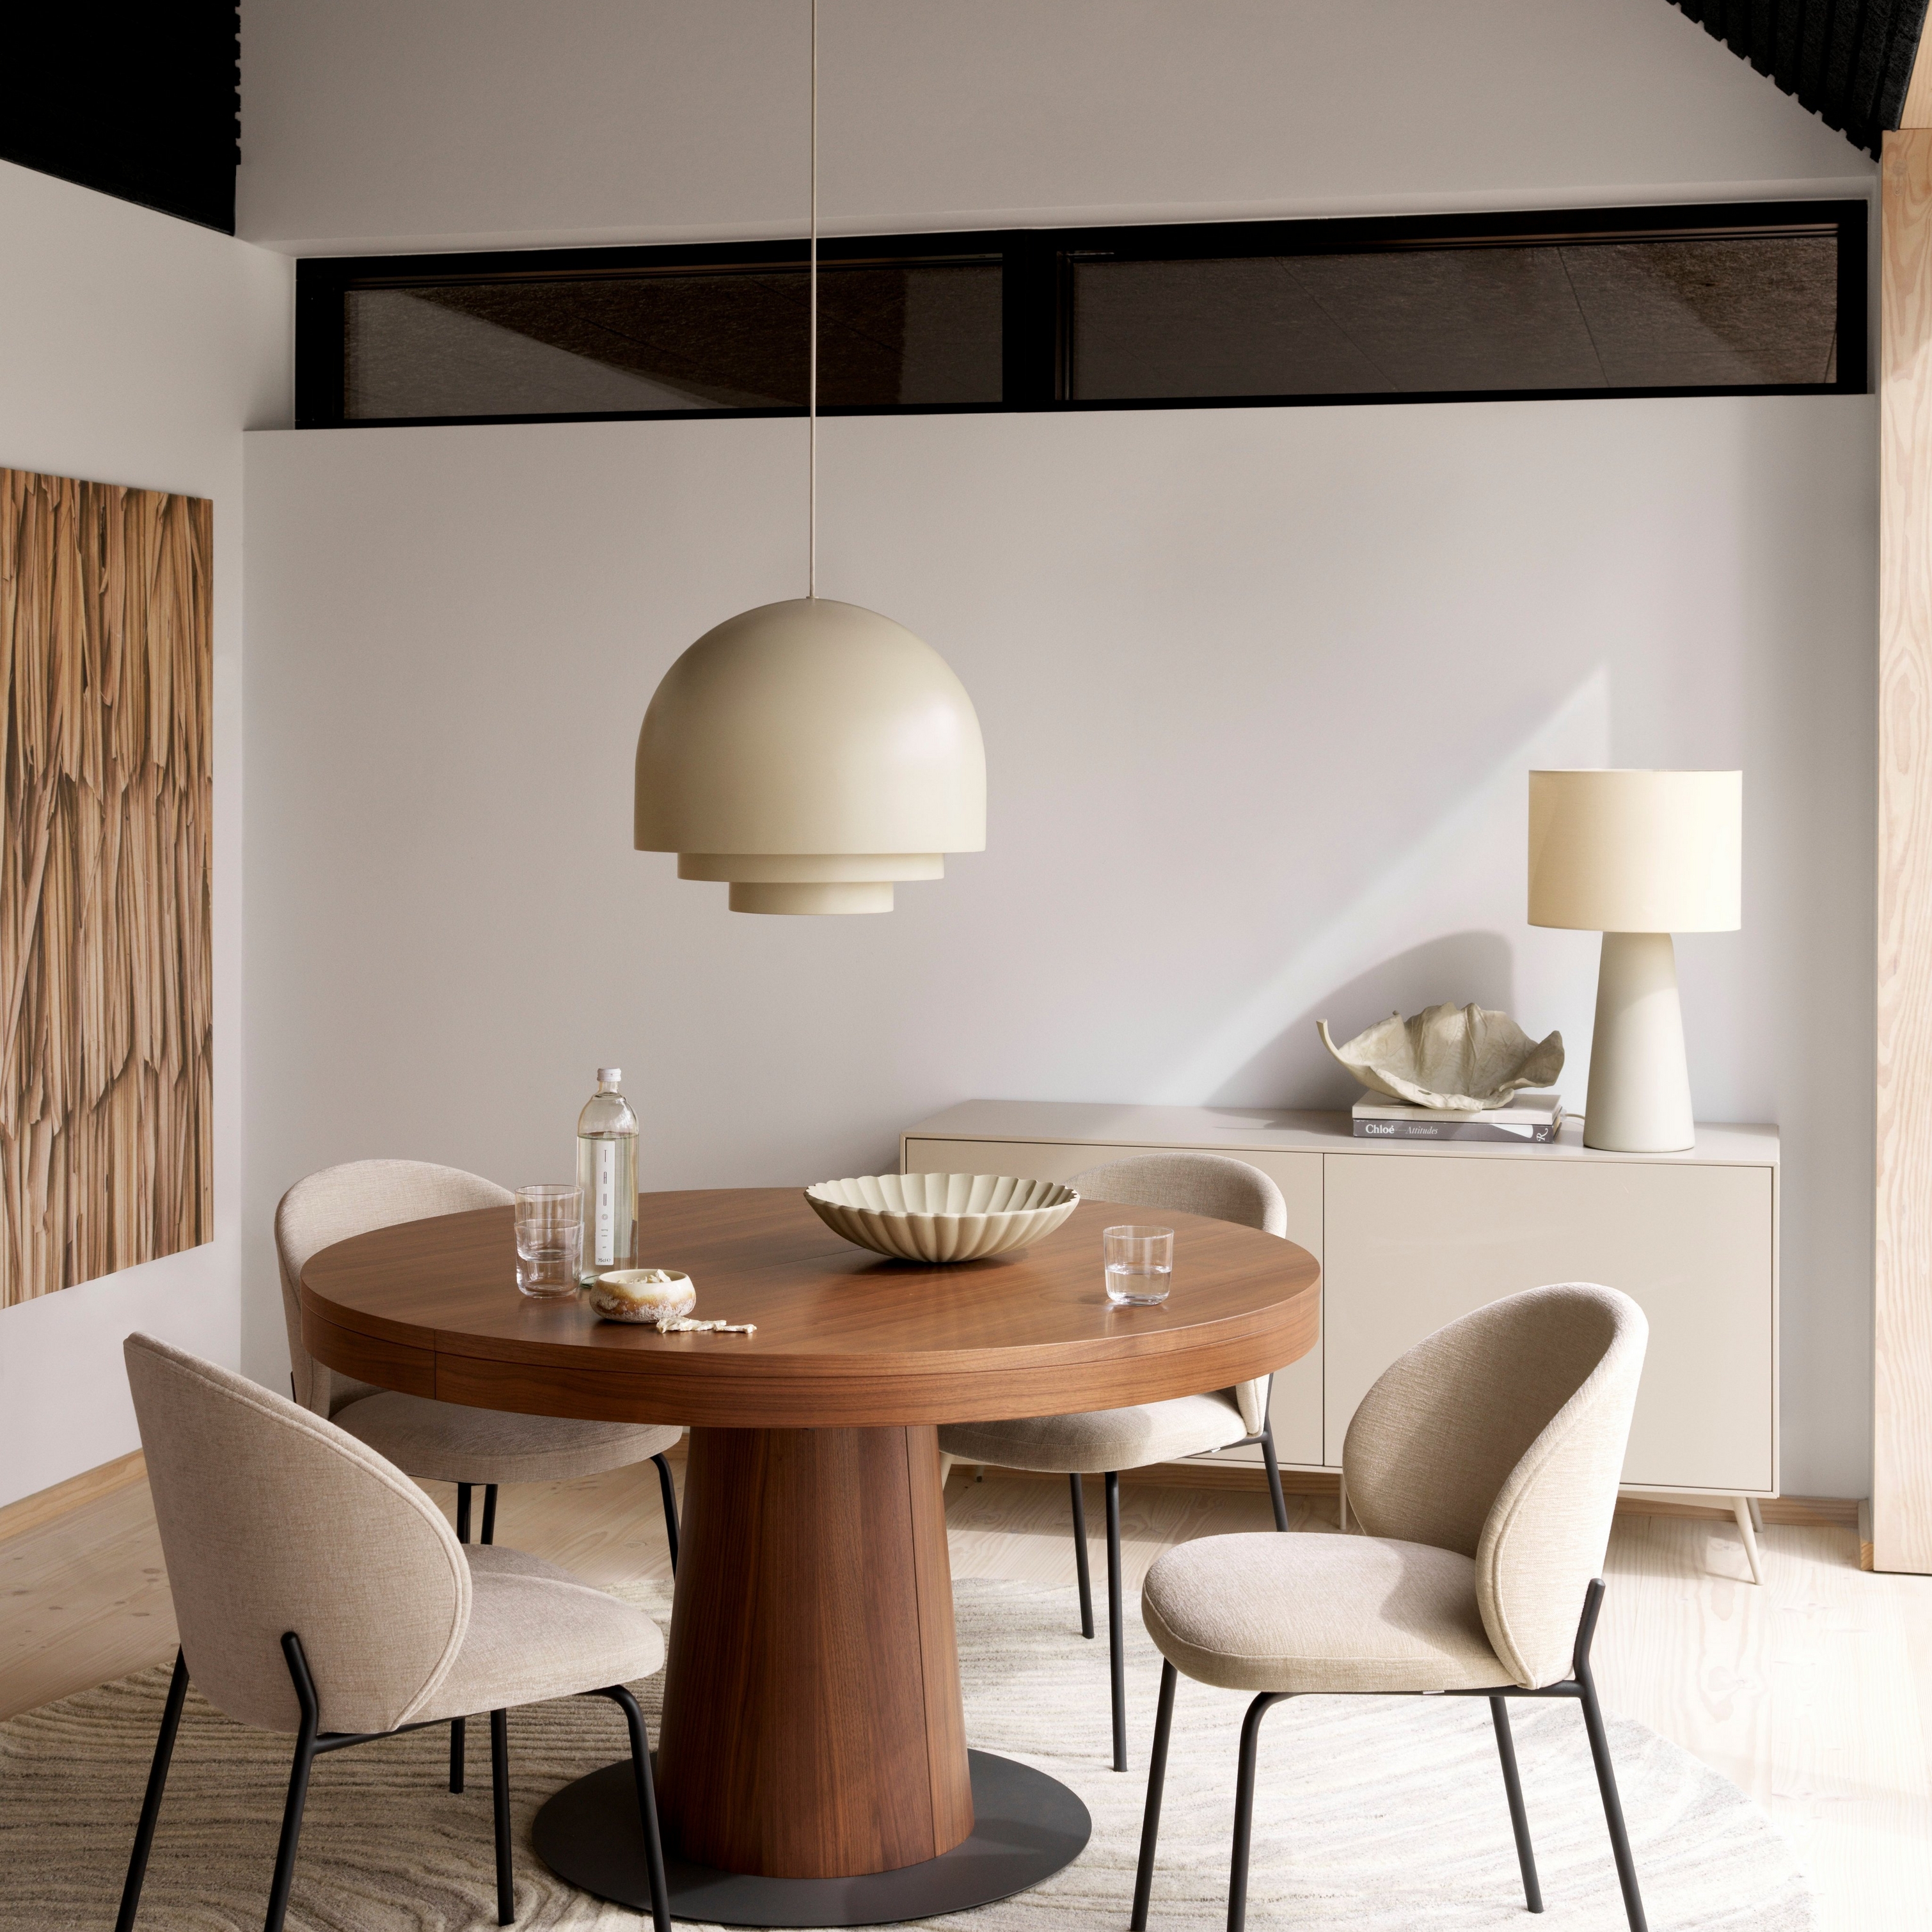 Comedor moderno con mesa redonda Granada de madera, sillas Princeton beige, lámpara colgante y alfombra color crema.